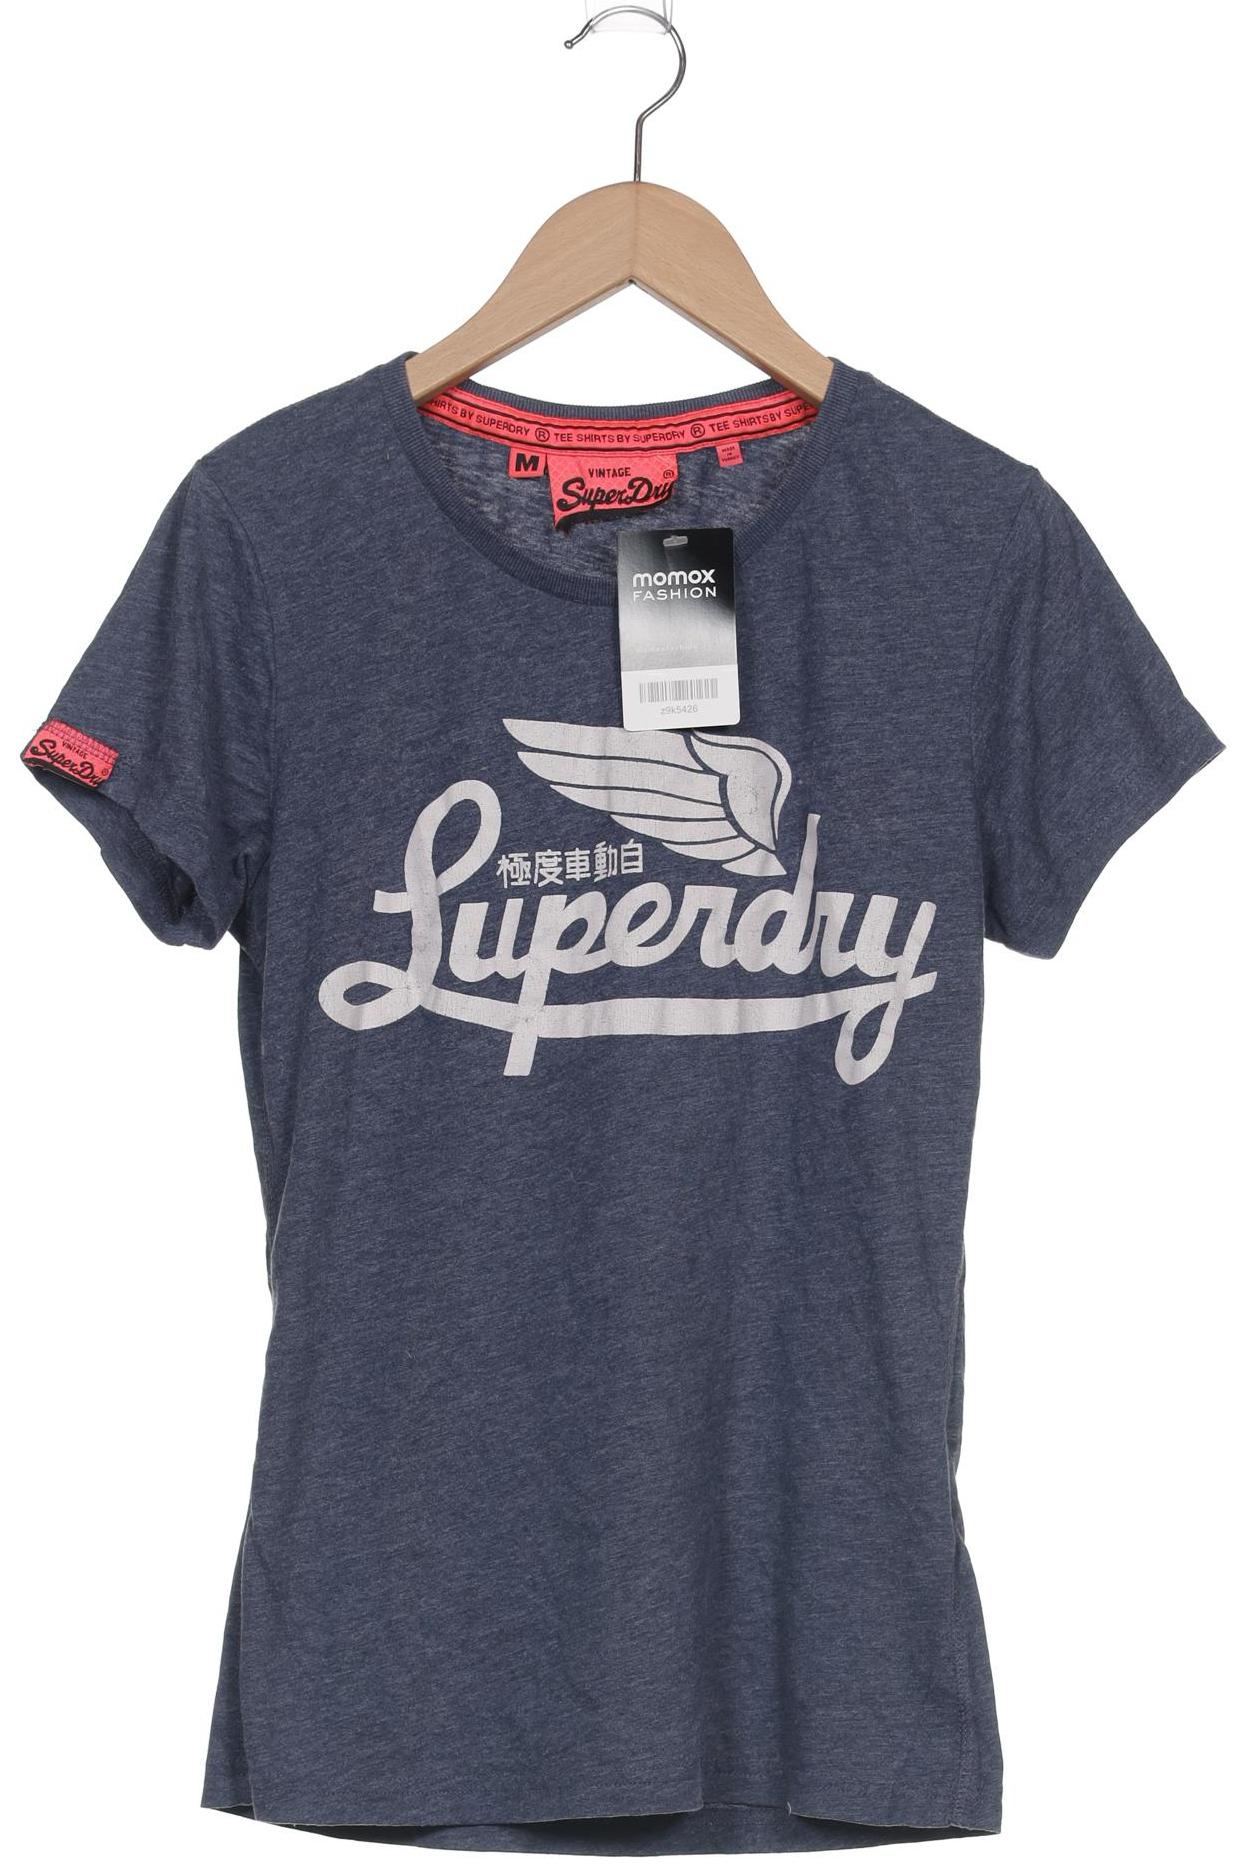 Superdry Damen T-Shirt, marineblau, Gr. 38 von Superdry